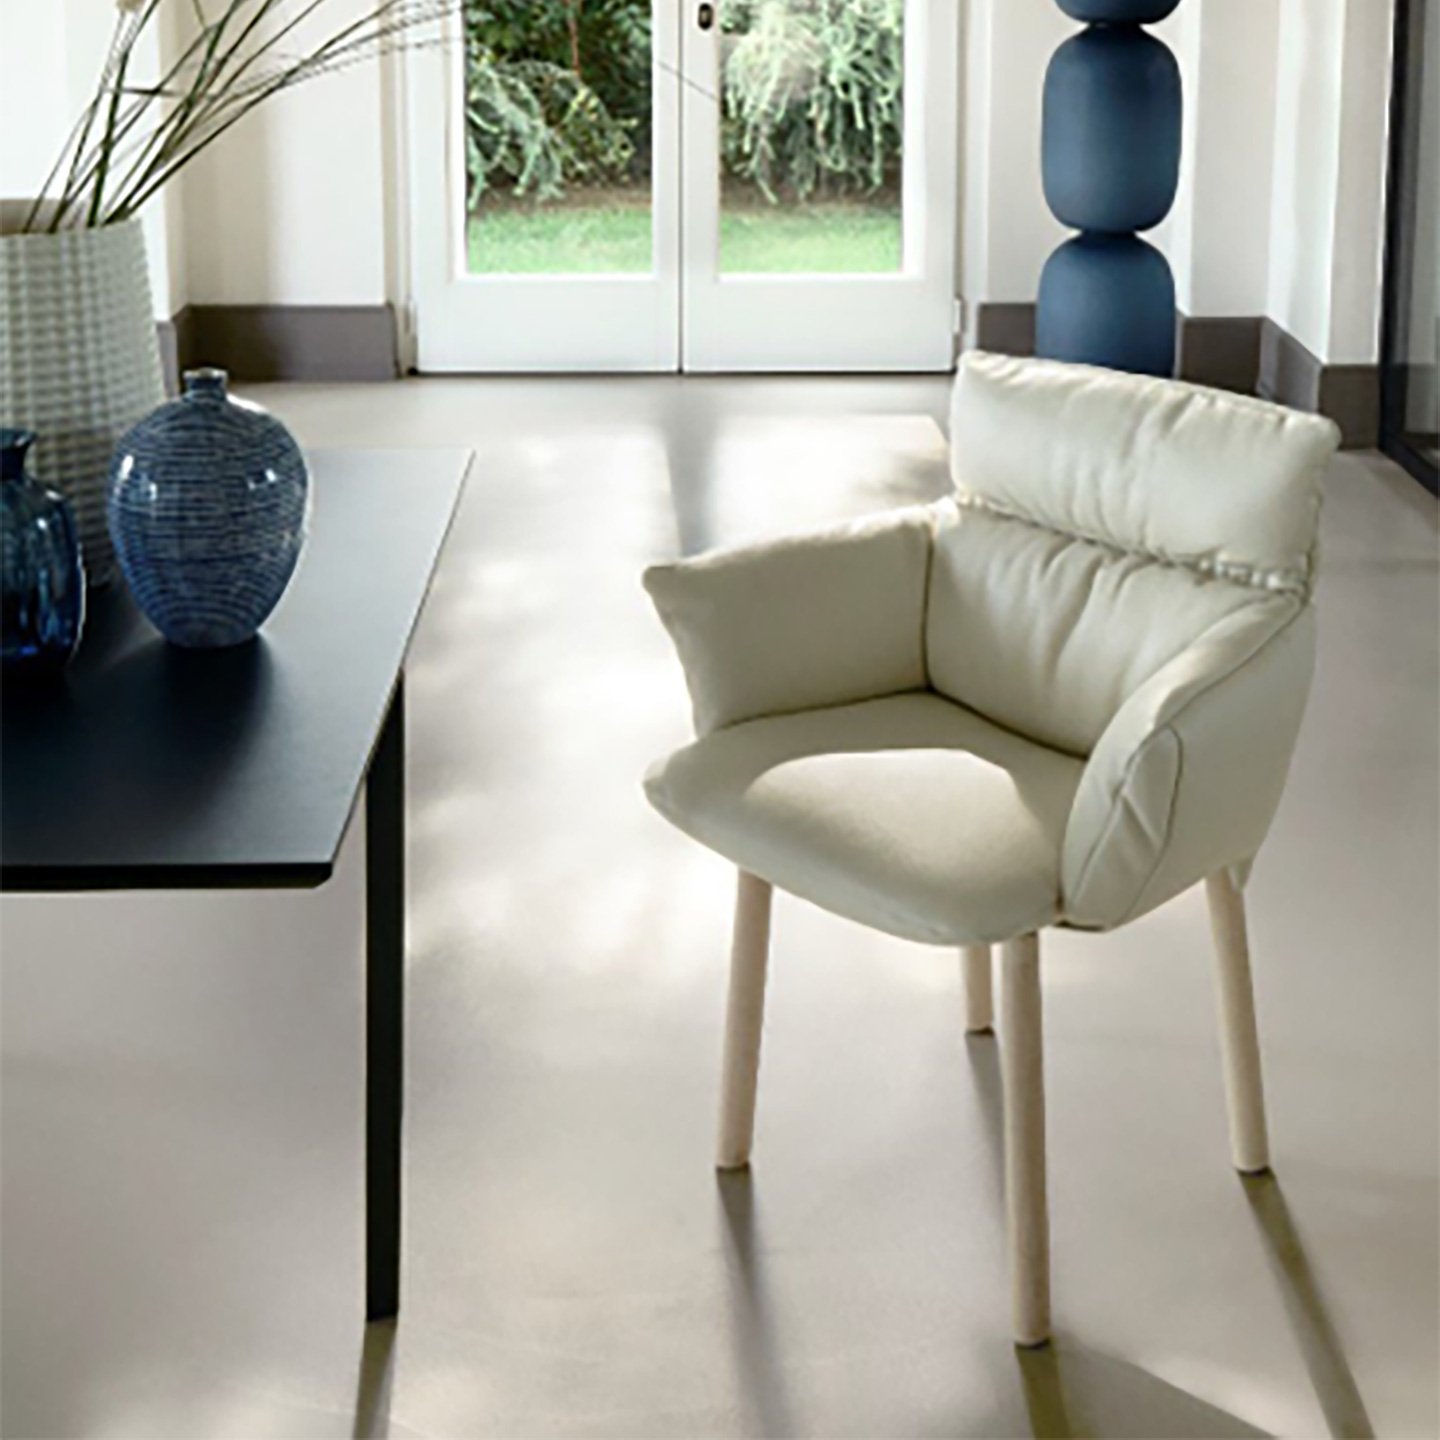 Der Lud'ina ist der ideale Stuhl für das Büro, Homeoffice oder Esszimmer.